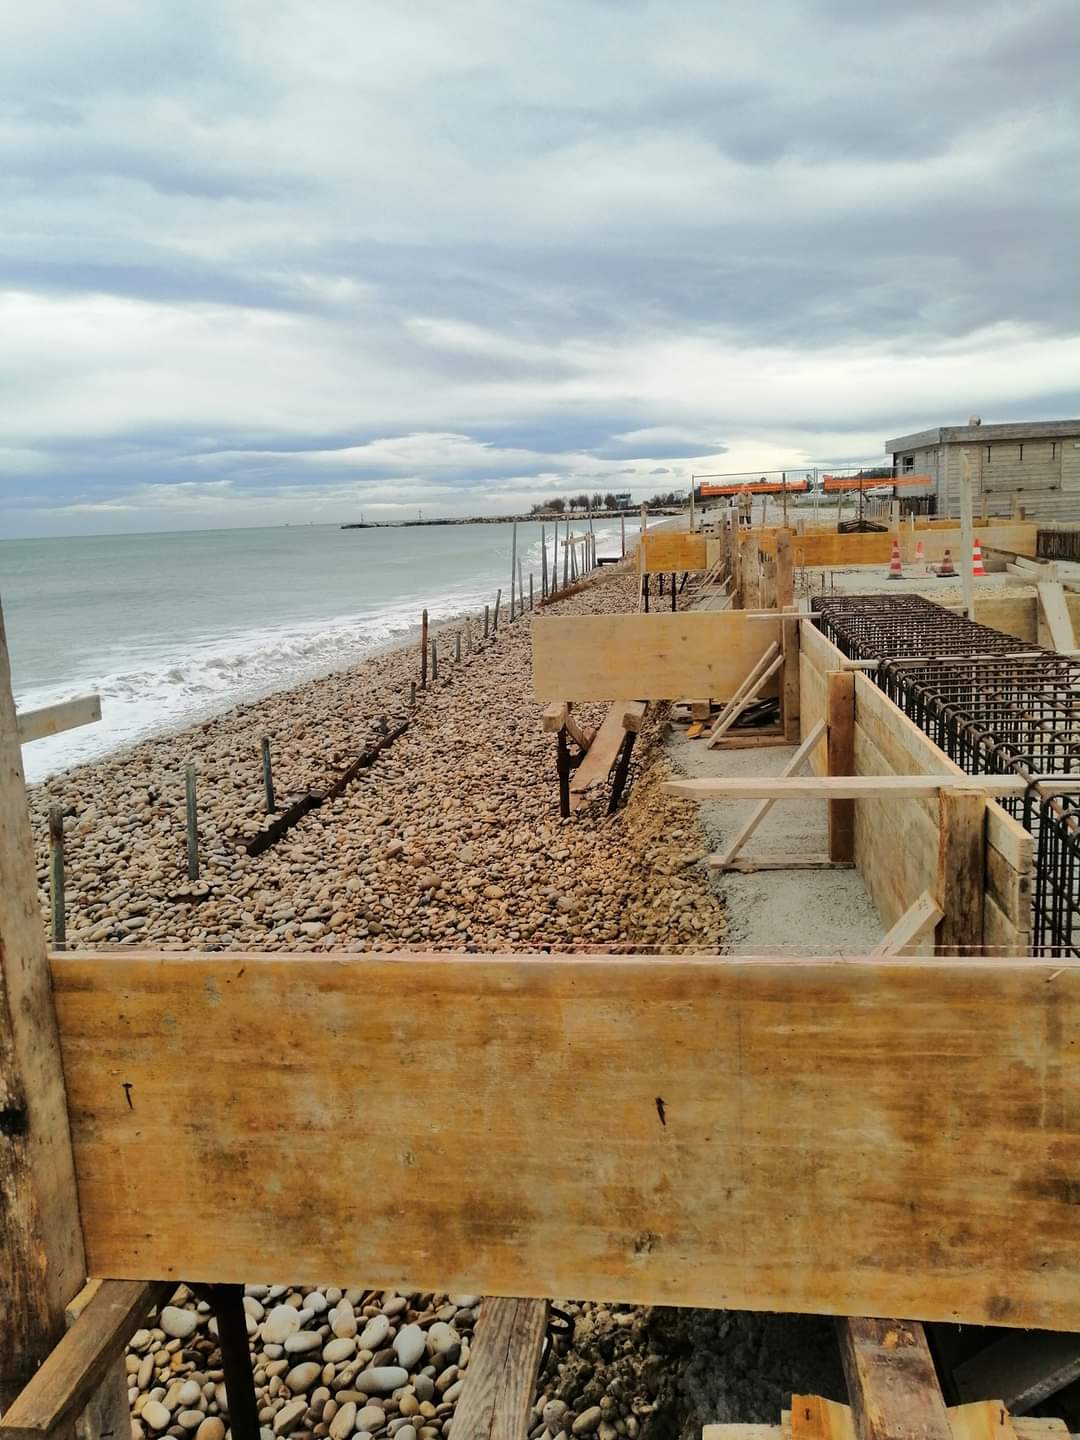 Cemento sulla spiaggia di Fossacesia, partiti i primi esposti in Procura